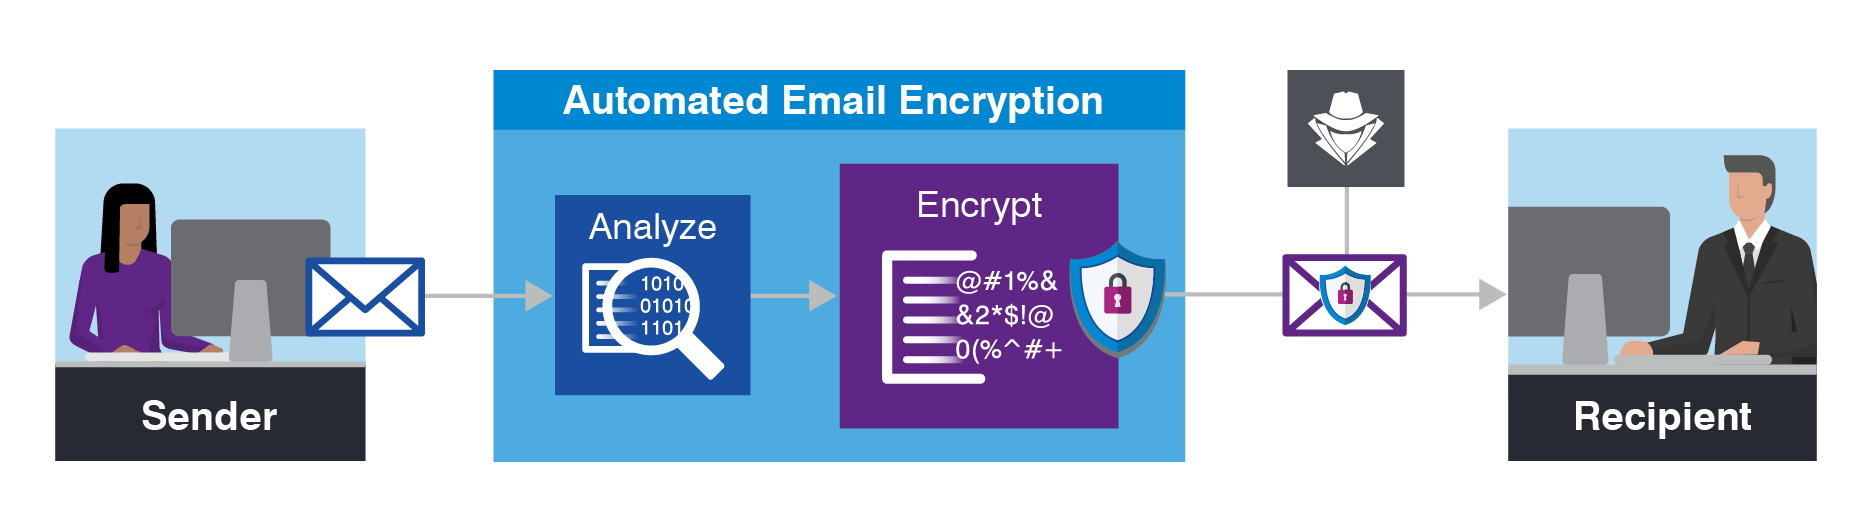 이메일 보안 모범 사례 - 자동 이메일 암호화